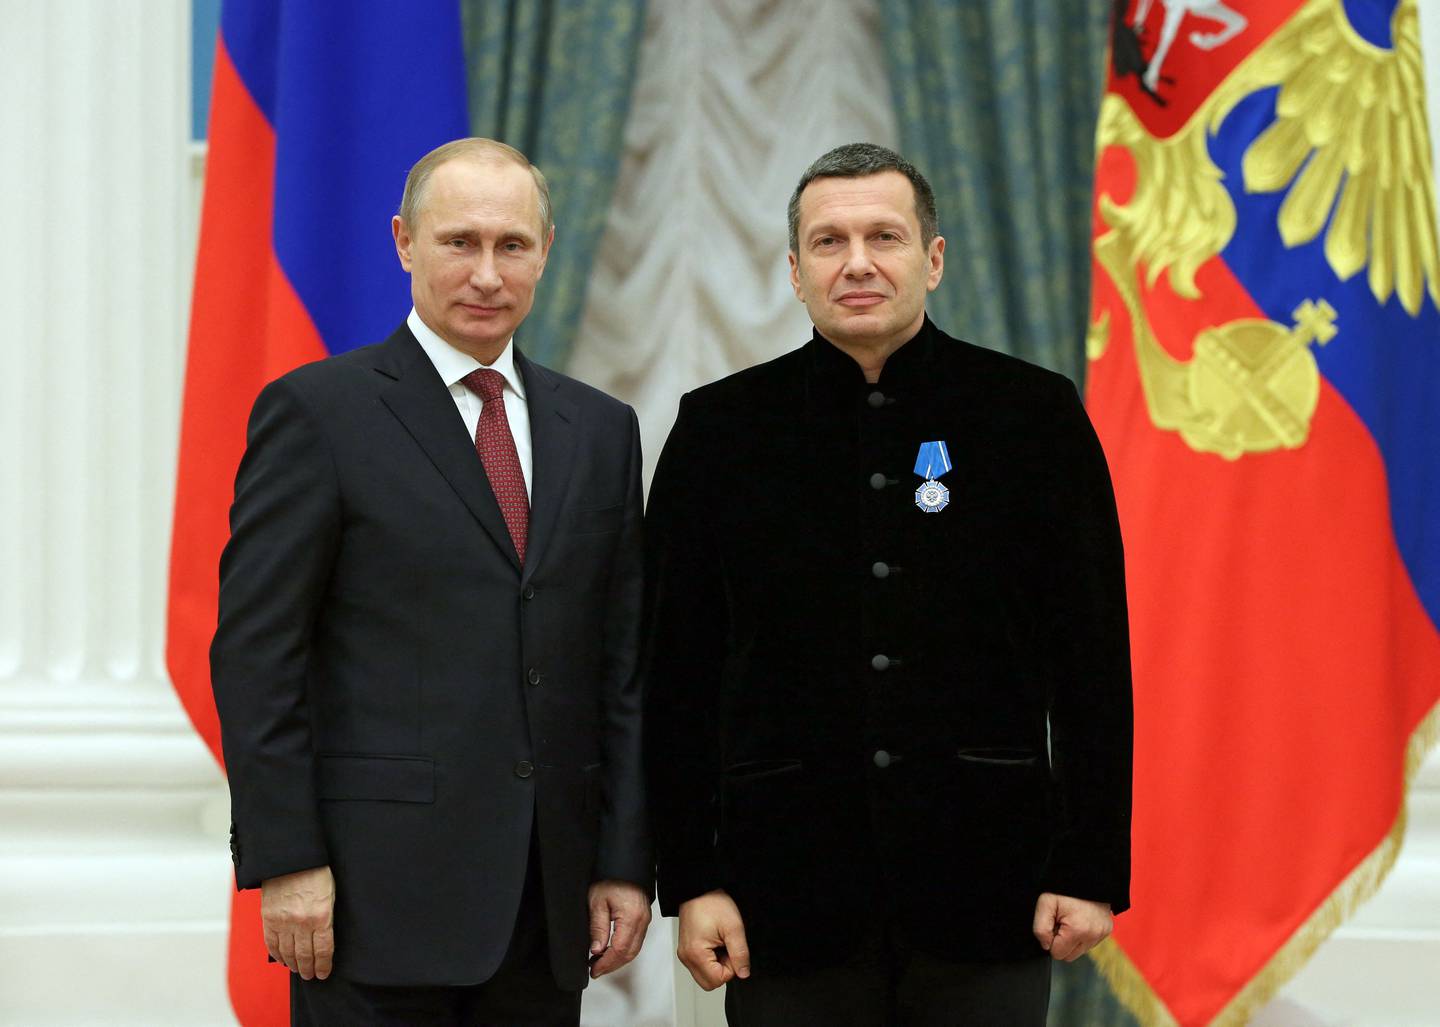 Presidenten og hans propagandist: Vladimir Putin og Vladimir Solovyov, her fra 2013.